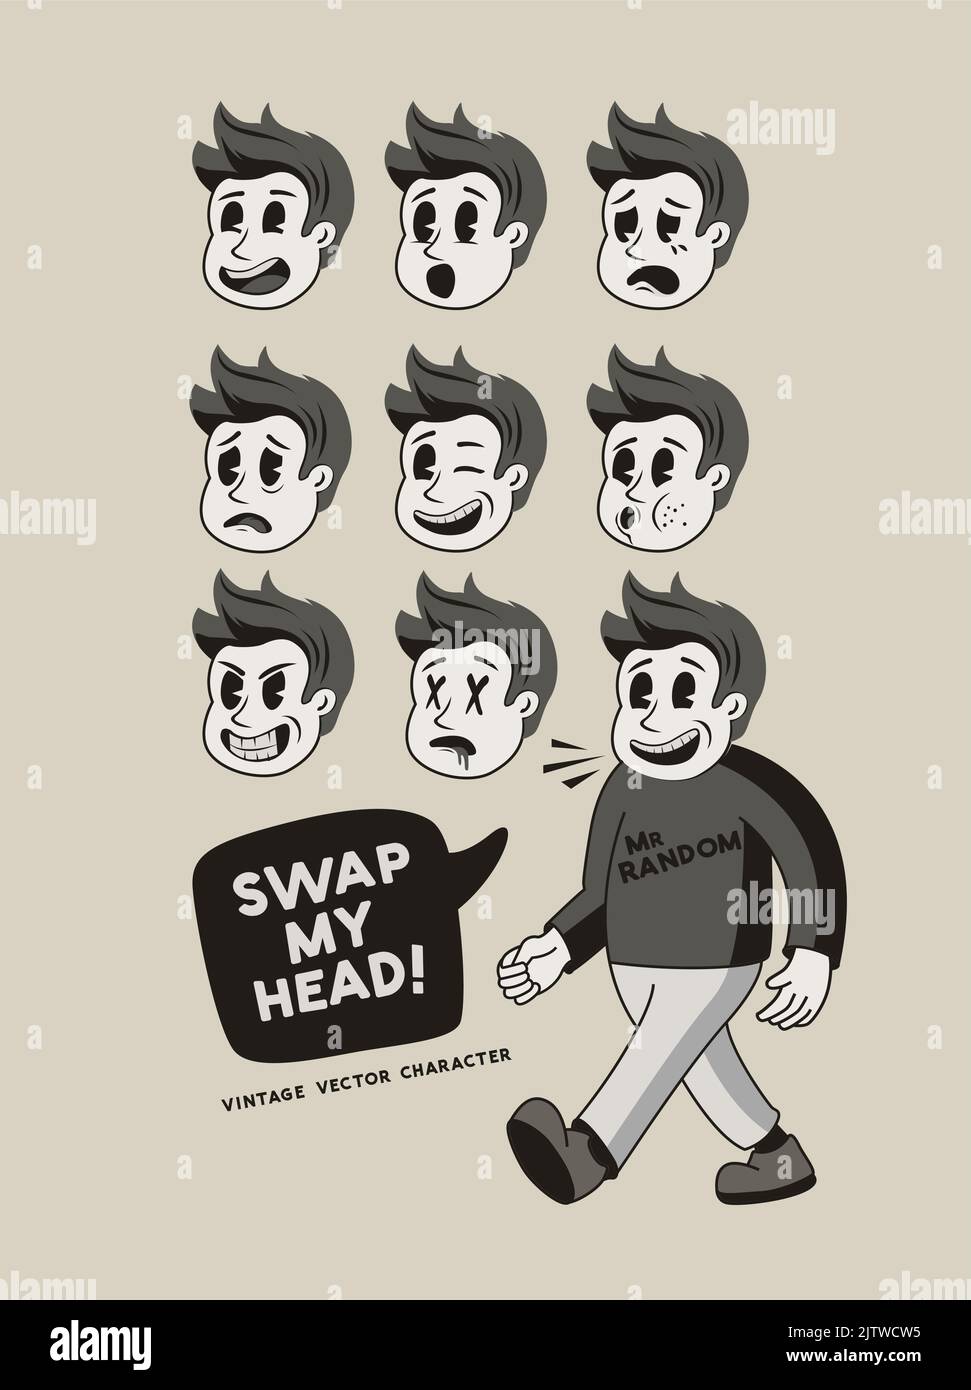 Ein alter männlicher Maskottchen-Charakter mit verschiedenen Gesichtern und Ausdrücken! Vektorgrafik Stock Vektor